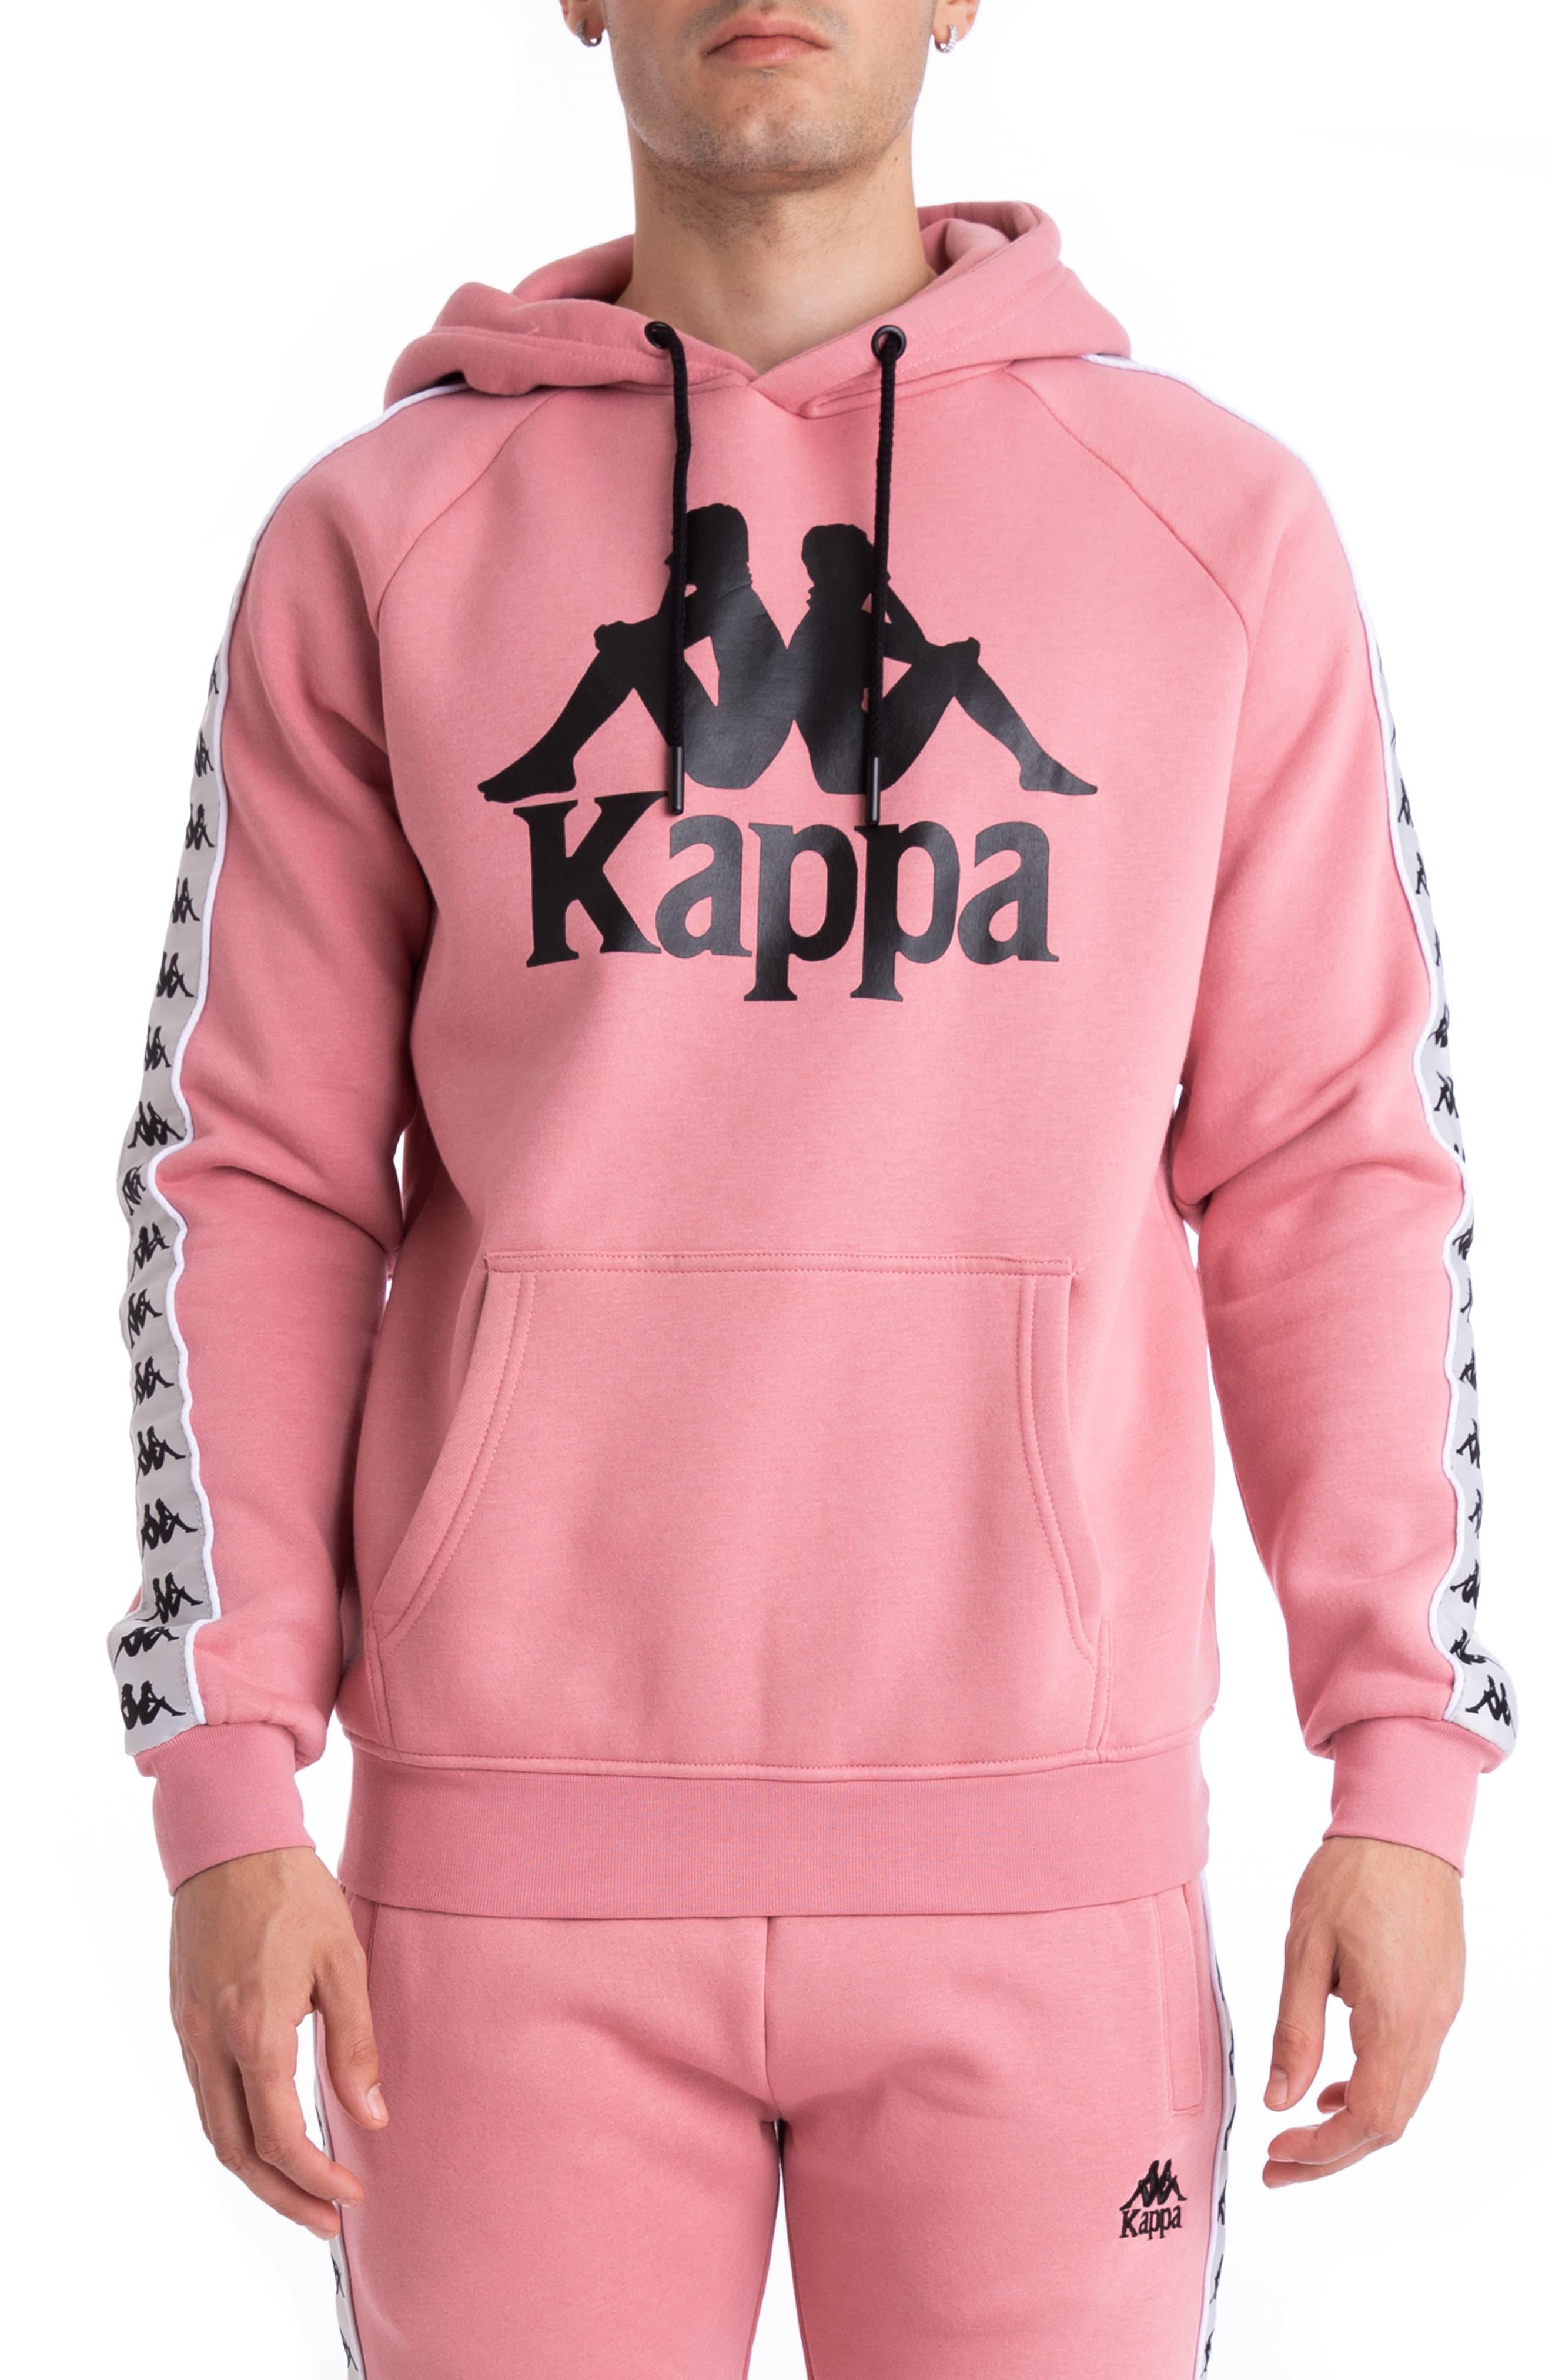 Kappa Pink Hoodie Portugal, SAVE 59% - raptorunderlayment.com